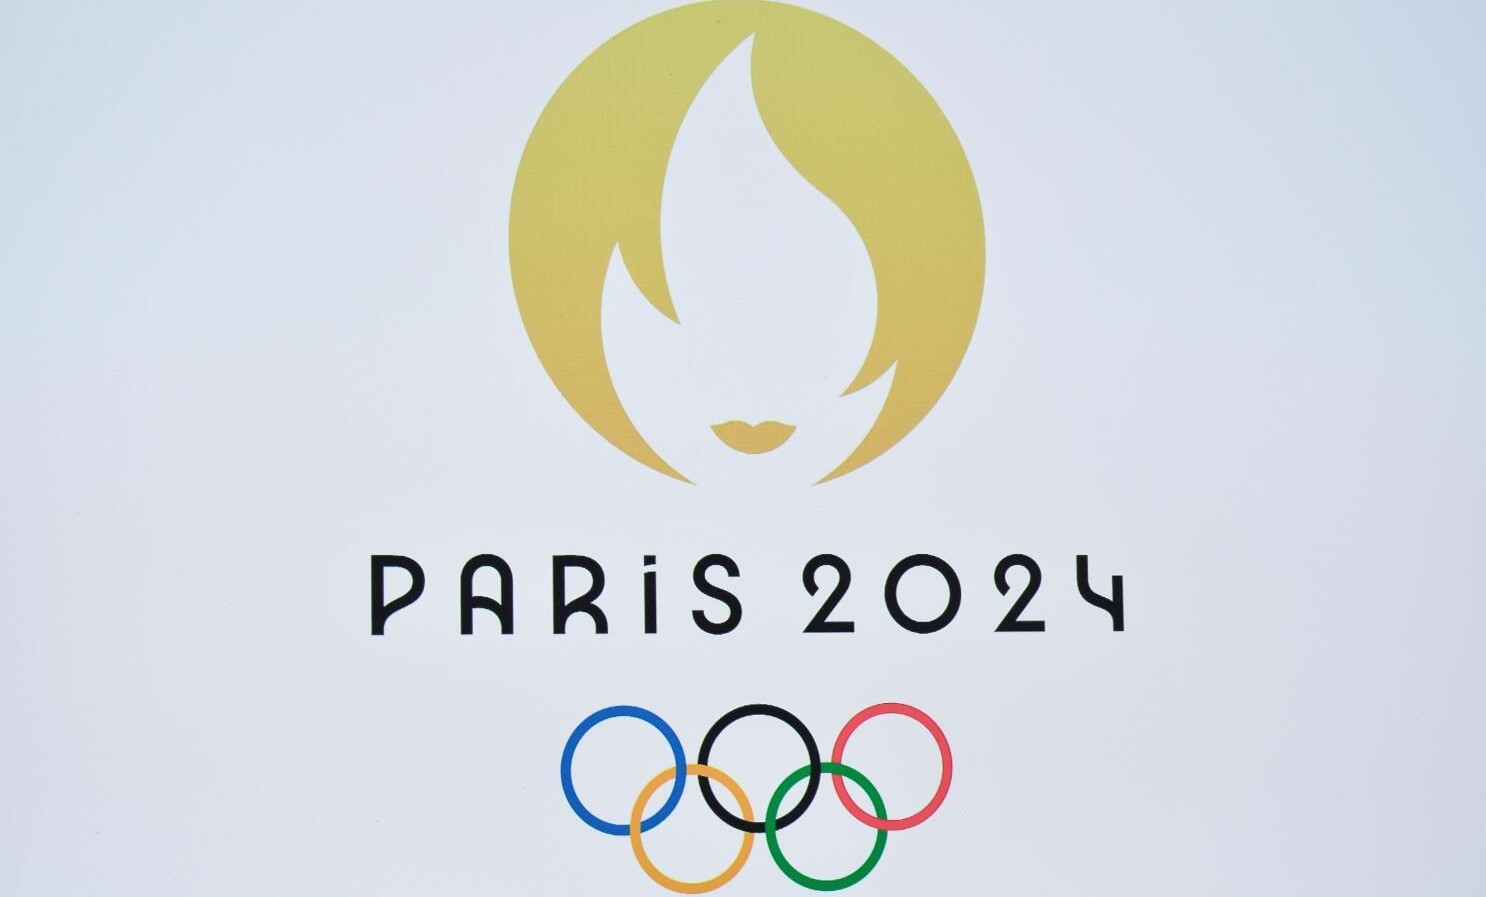 Olimpiyat meşalesi bugün yanıyor; Paris 2024 başlıyor